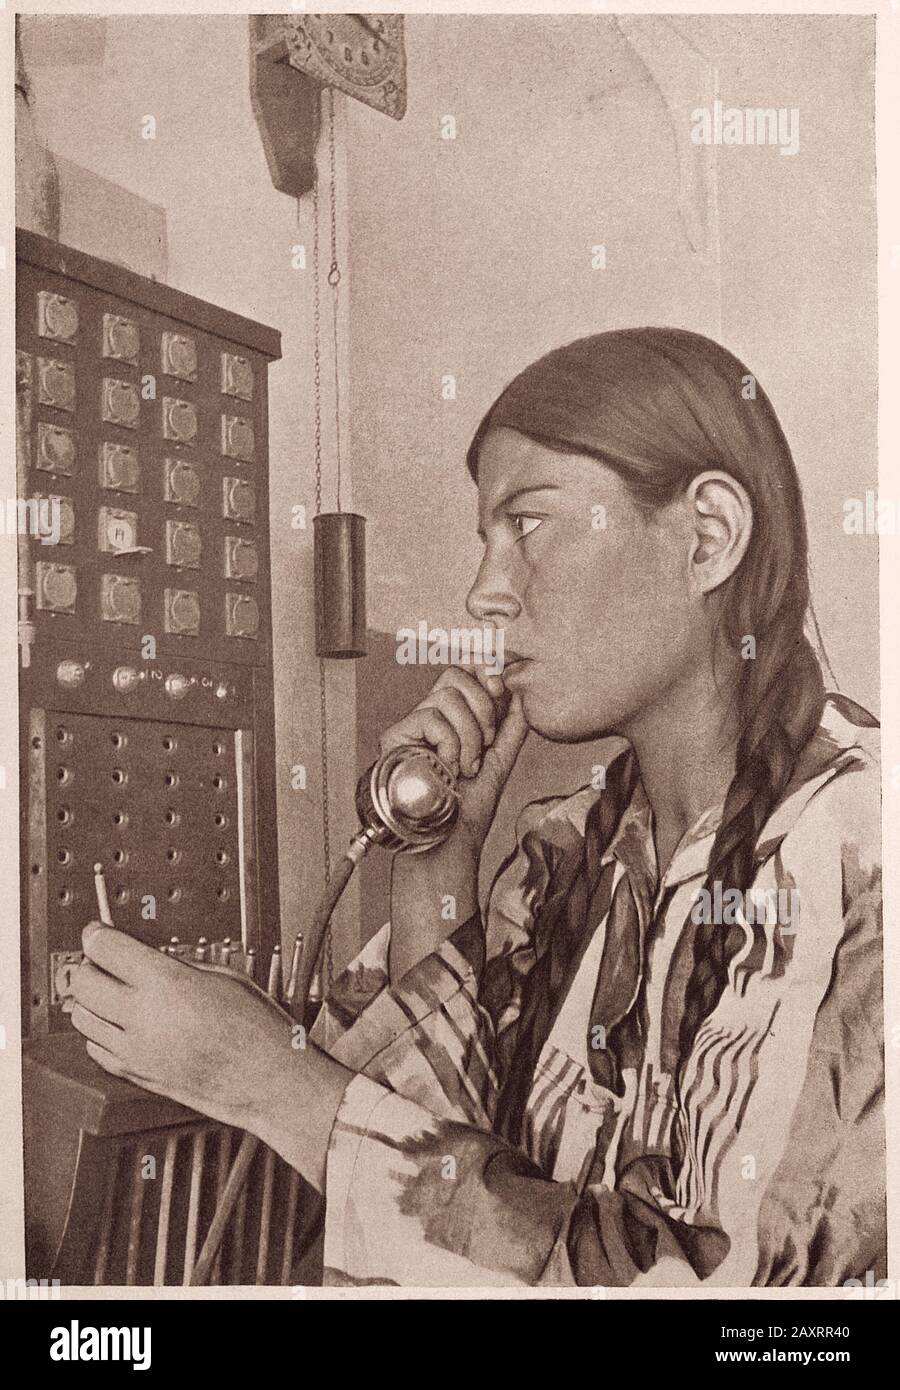 Das Leben in der Sowjetunion in den 1930er Jahren. Aus dem sowjetischen Propagandabuch. Usbekischer Telefonanbieter bei der Arbeit. Stockfoto